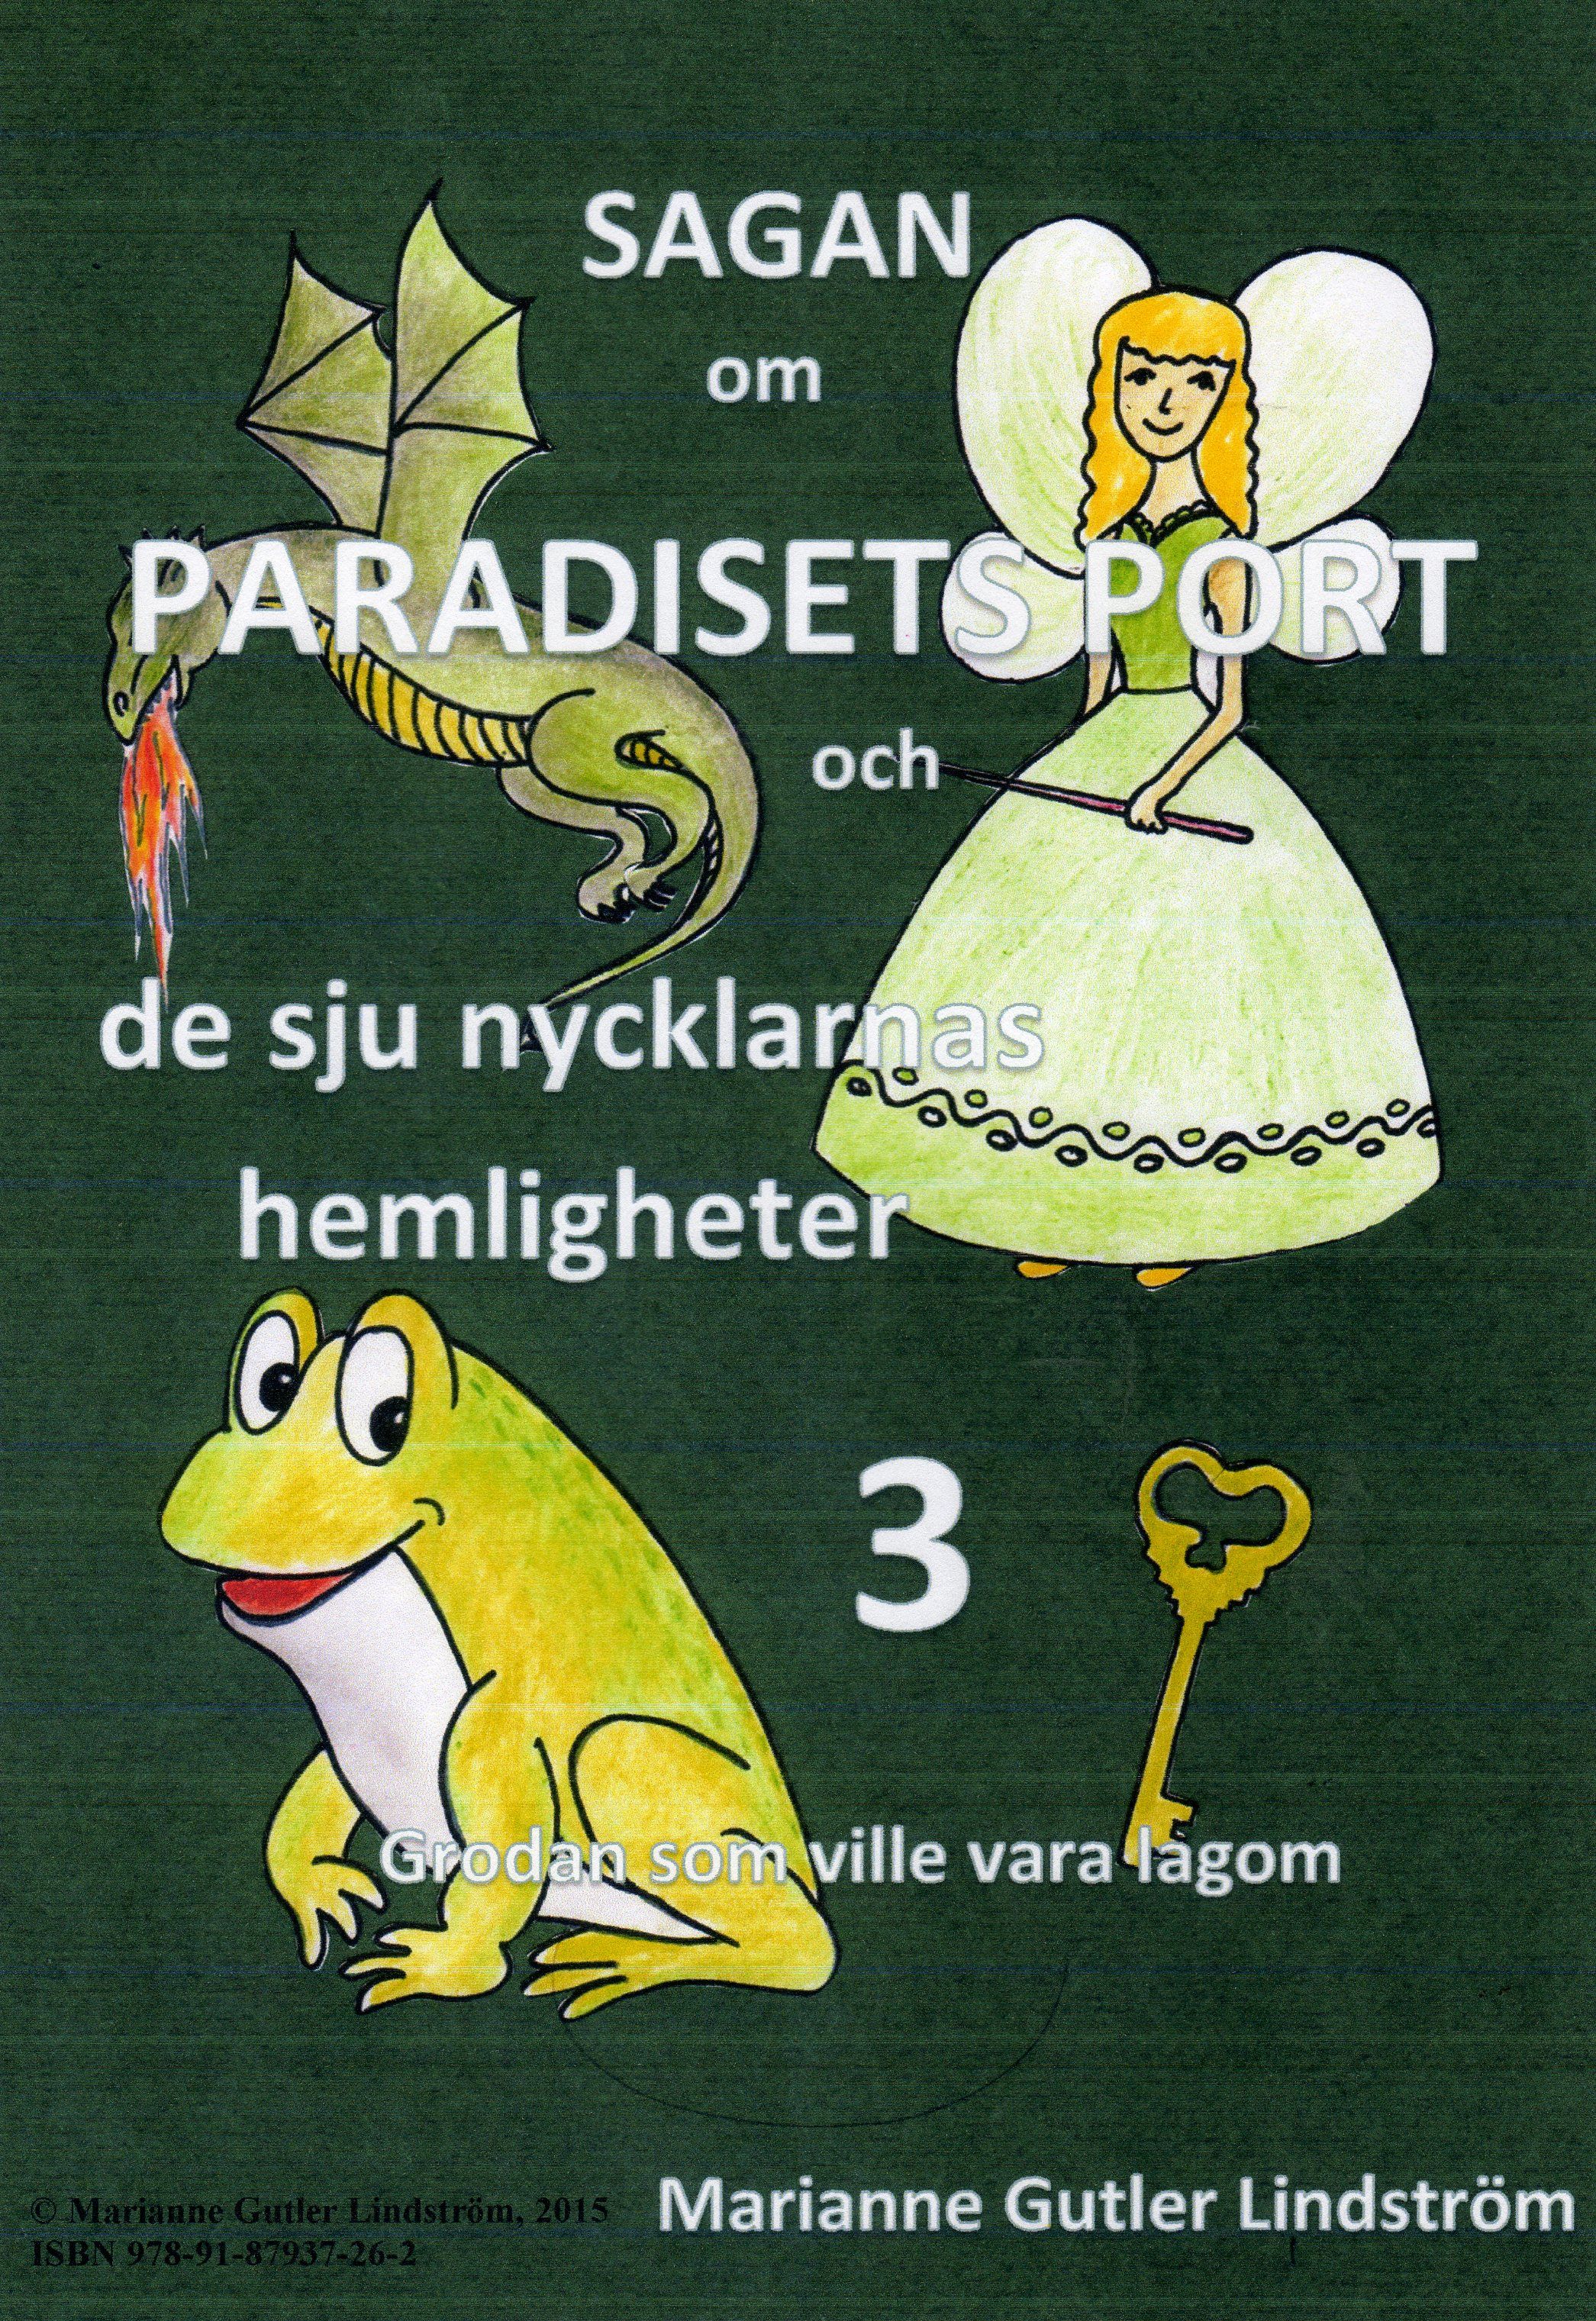 Sagan om Paradisets port 3 Grodan som ville vara lagom, e-bog af Marianne Gutler Lindström